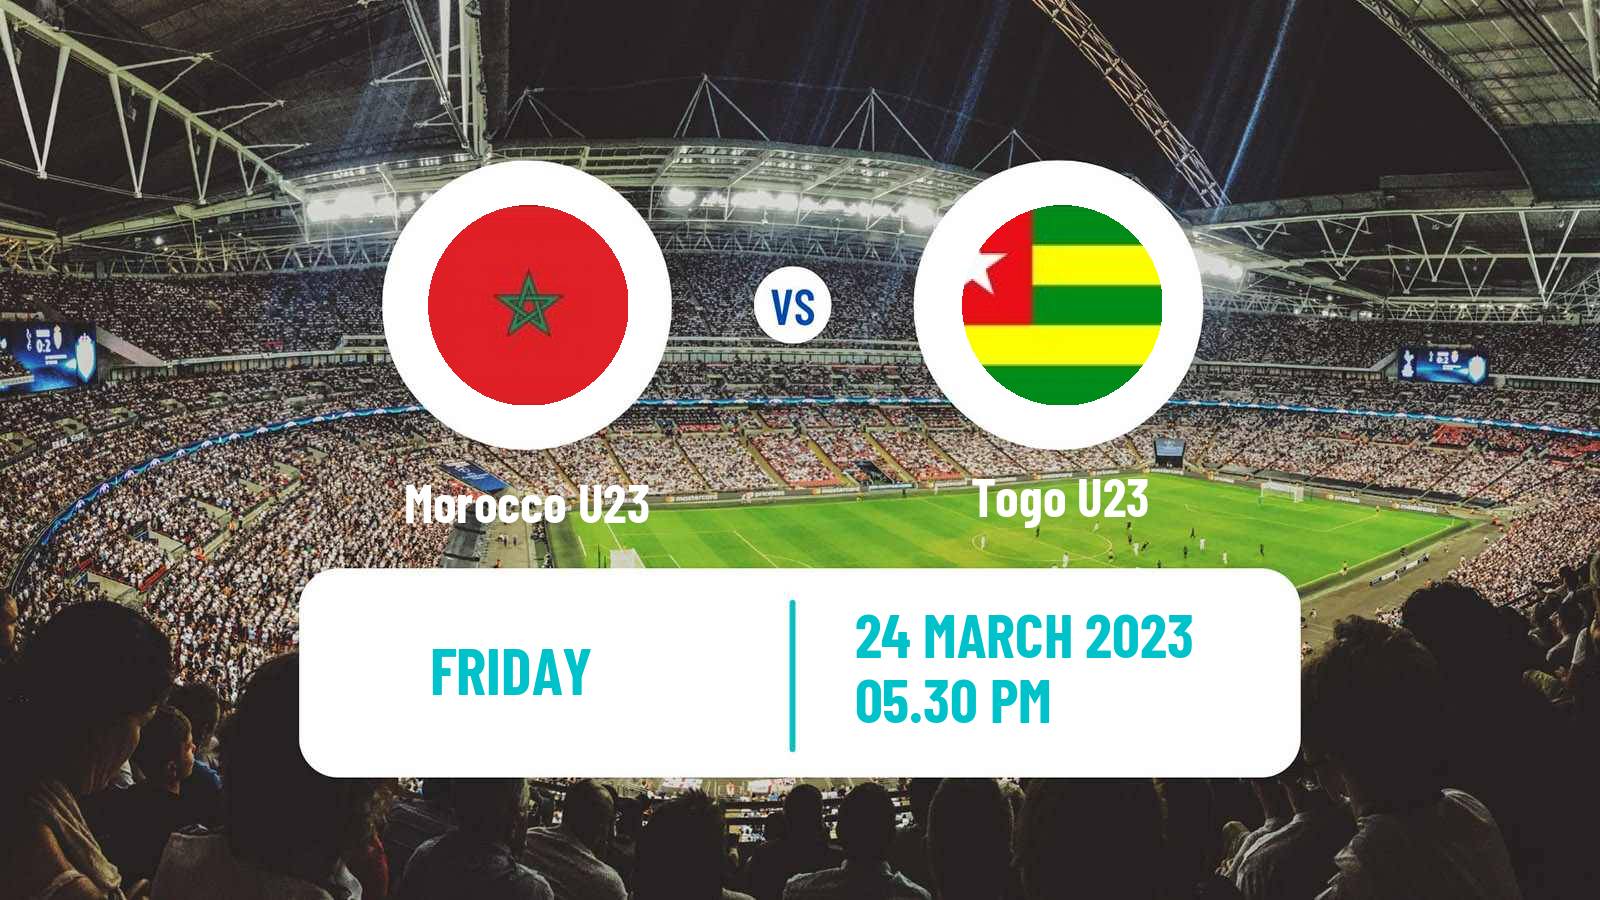 Soccer Friendly Morocco U23 - Togo U23